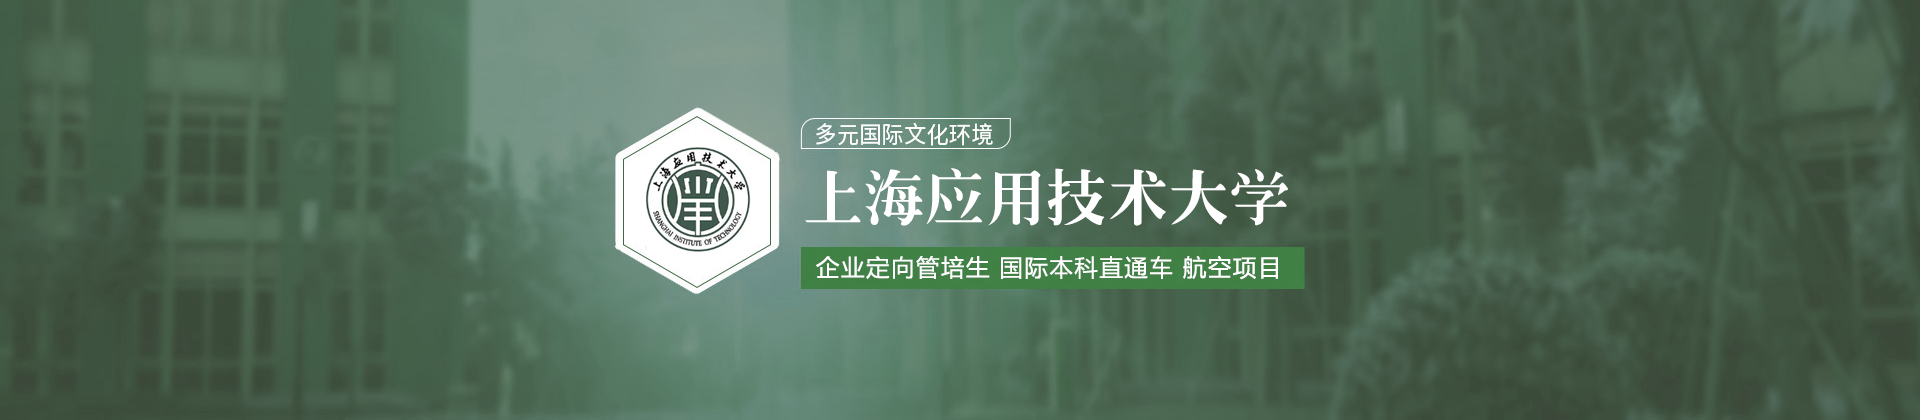 上海应用技术大学企业定向管培生